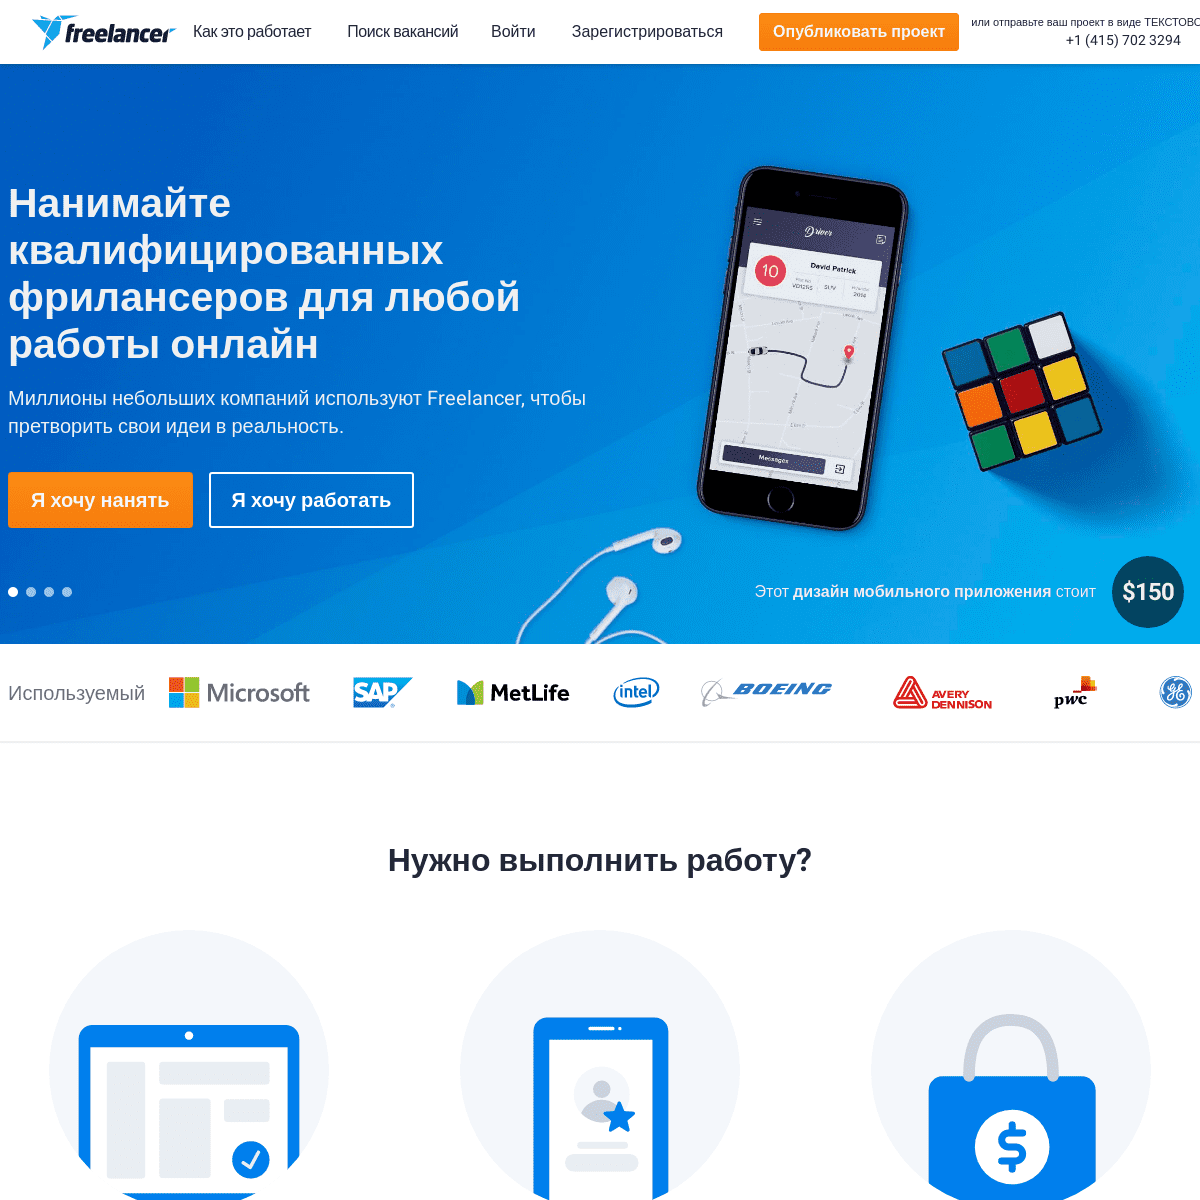 A complete backup of freelancer.com.ru